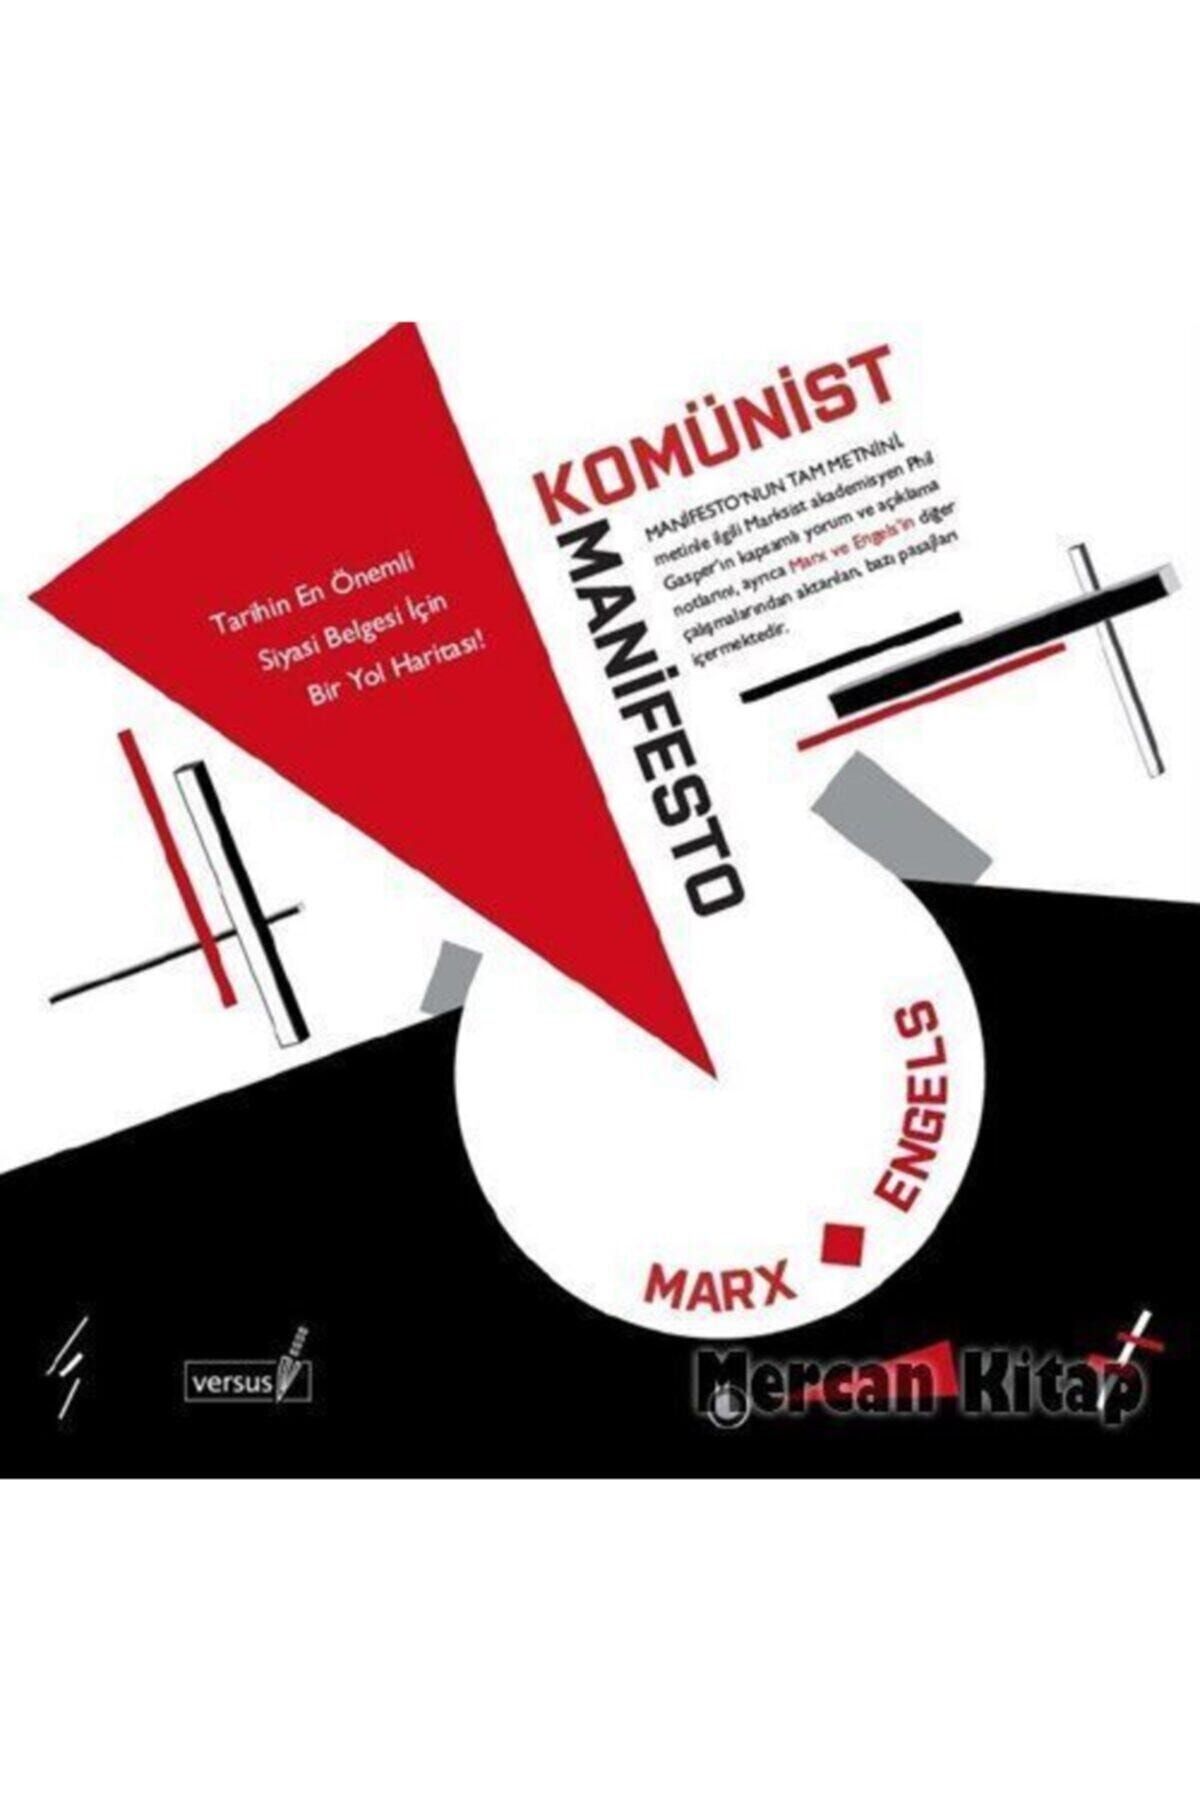 Versus Kitap Yayınları Komünist Manifesto